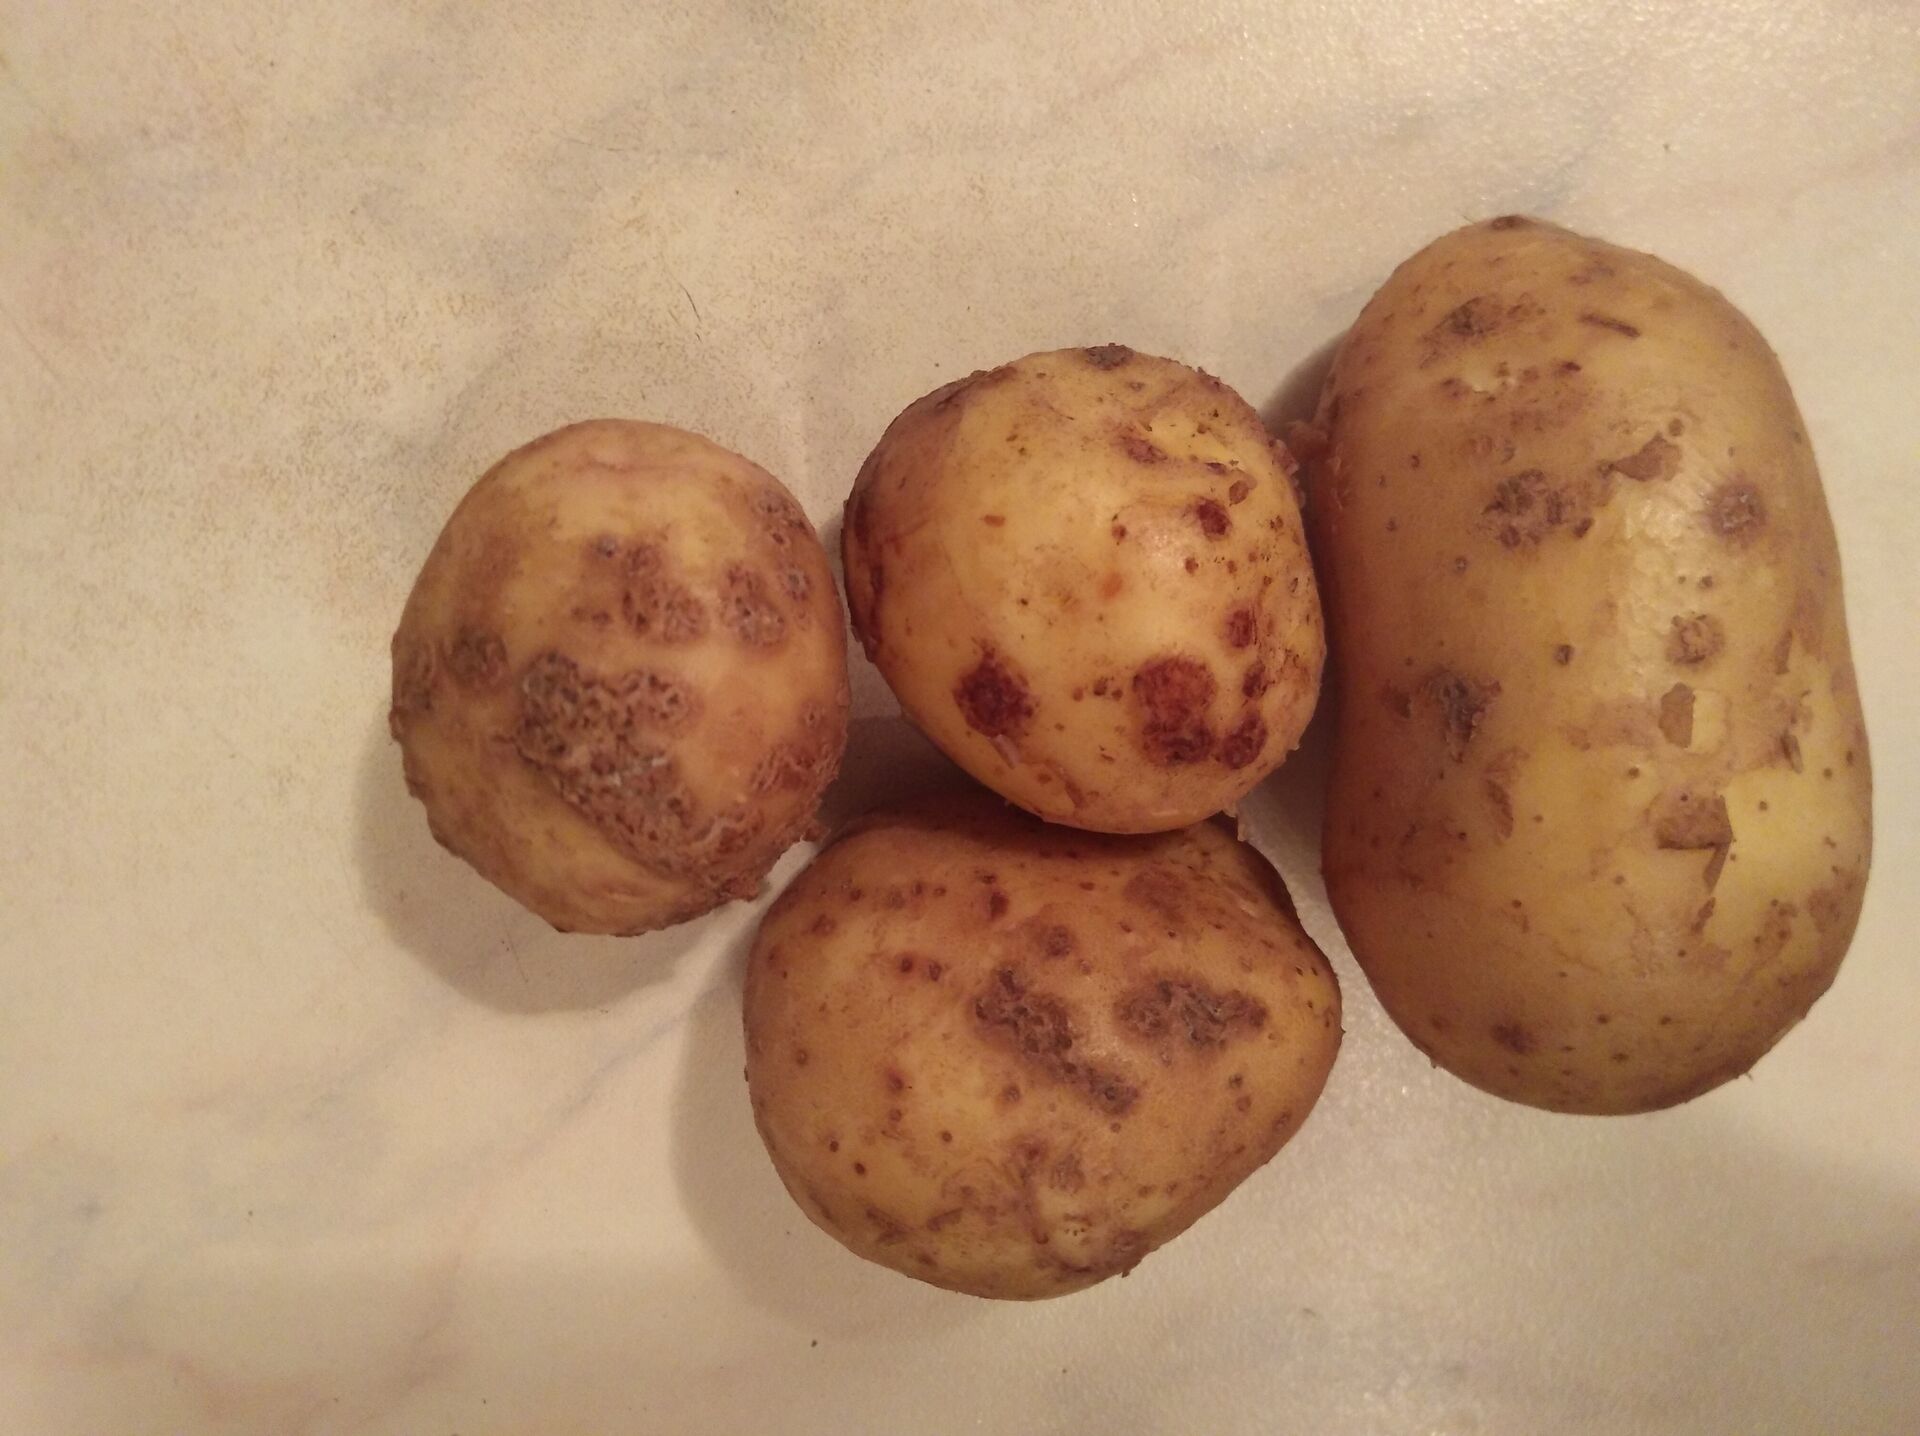 Лучшие сорта картофеля: фото и описание